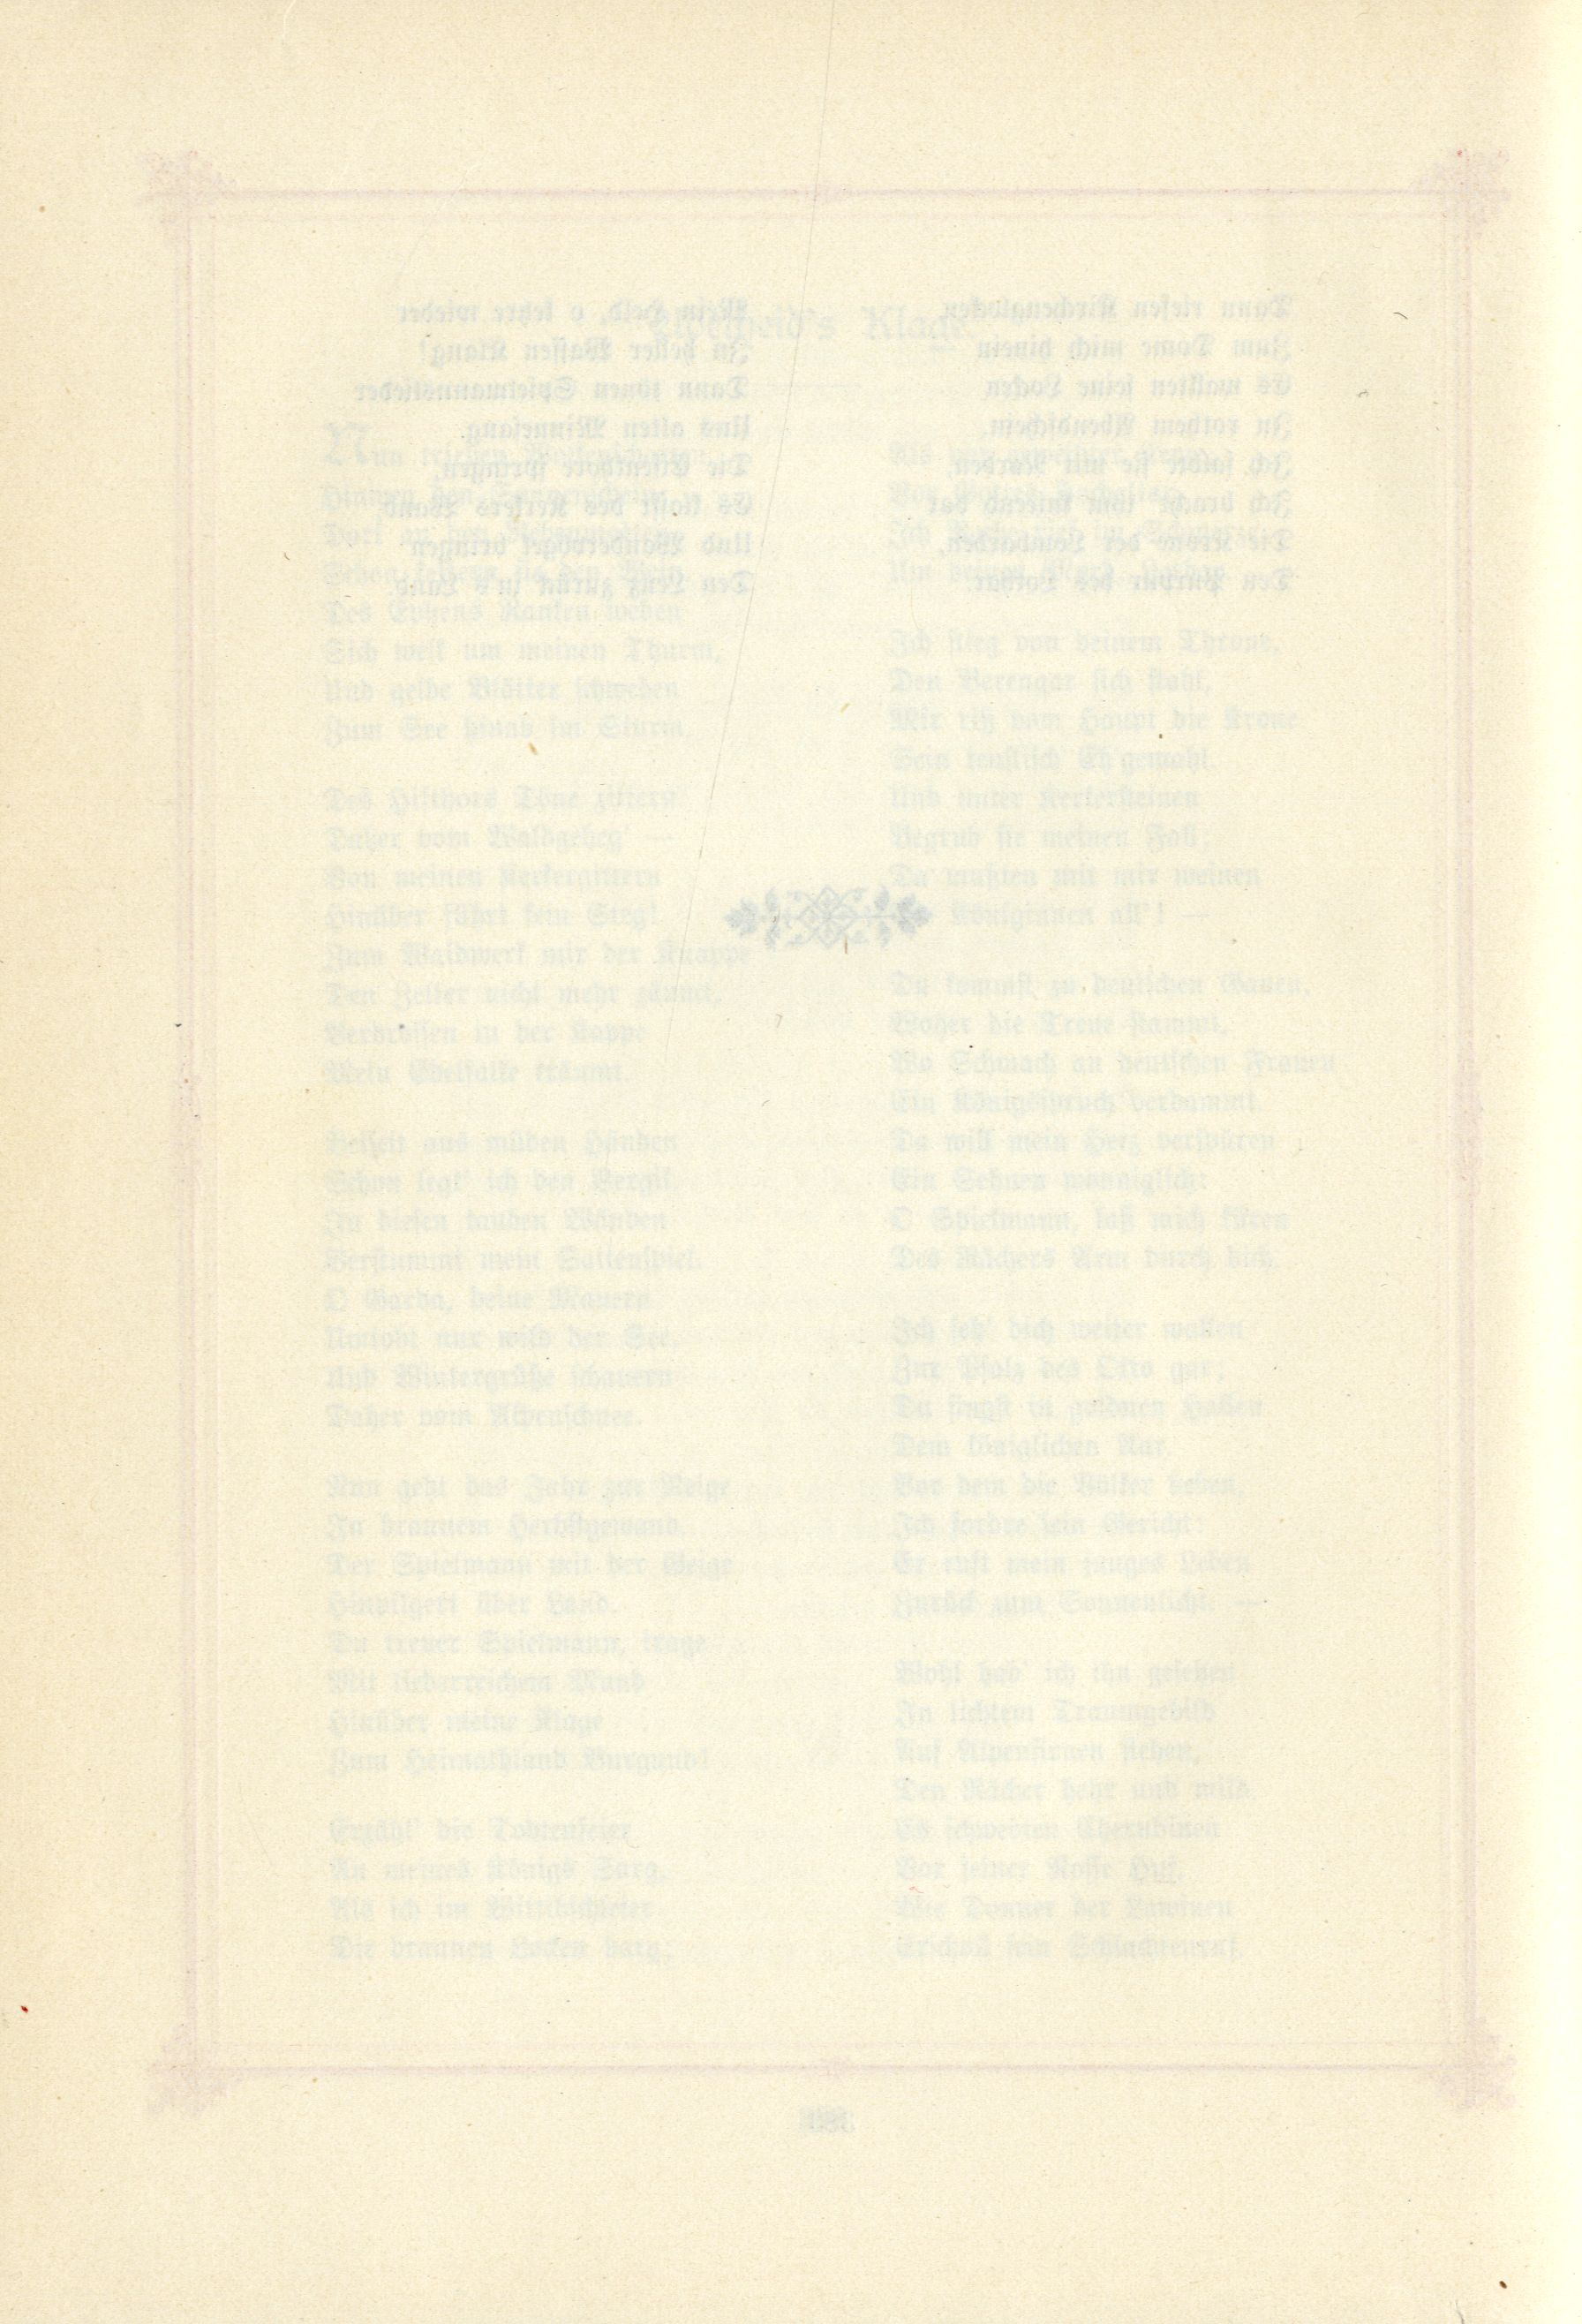 Das Baltische Dichterbuch (1895) | 430. (384) Main body of text